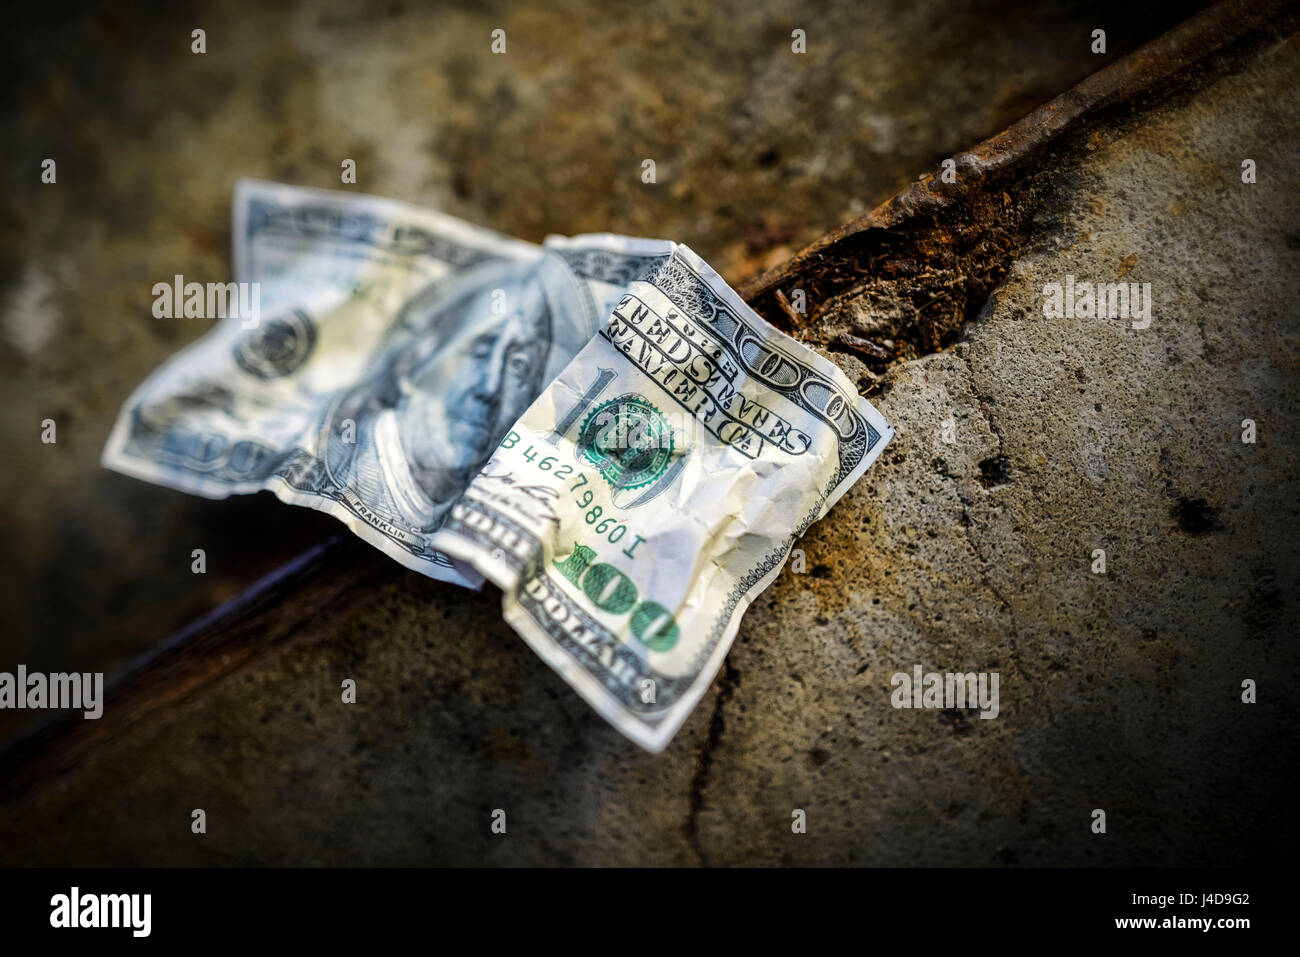 100-segno di dollaro sul terreno, foto simbolico per l'US-crisi del debito, 100-Dollar-Note am Boden, Symbolfoto fuer die US-Schuldenkrise Foto Stock